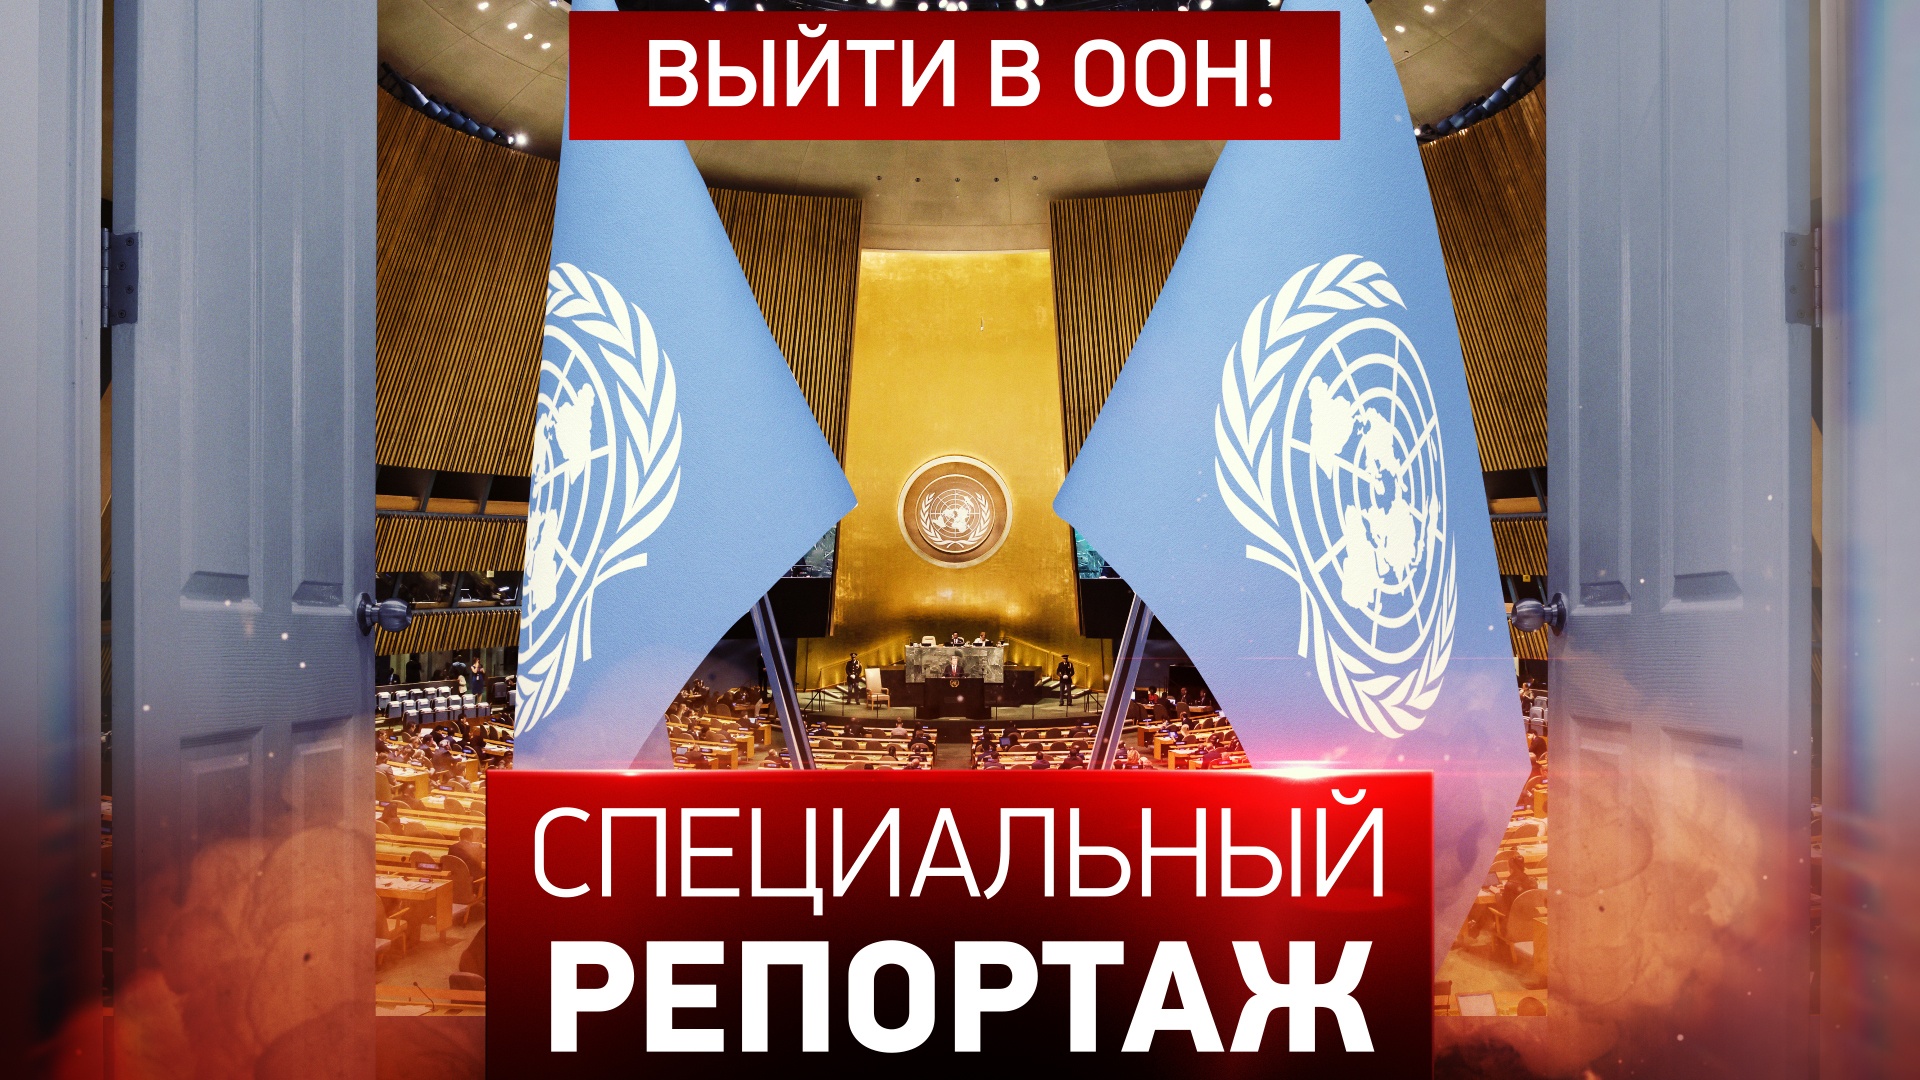 Выйти в ООН!